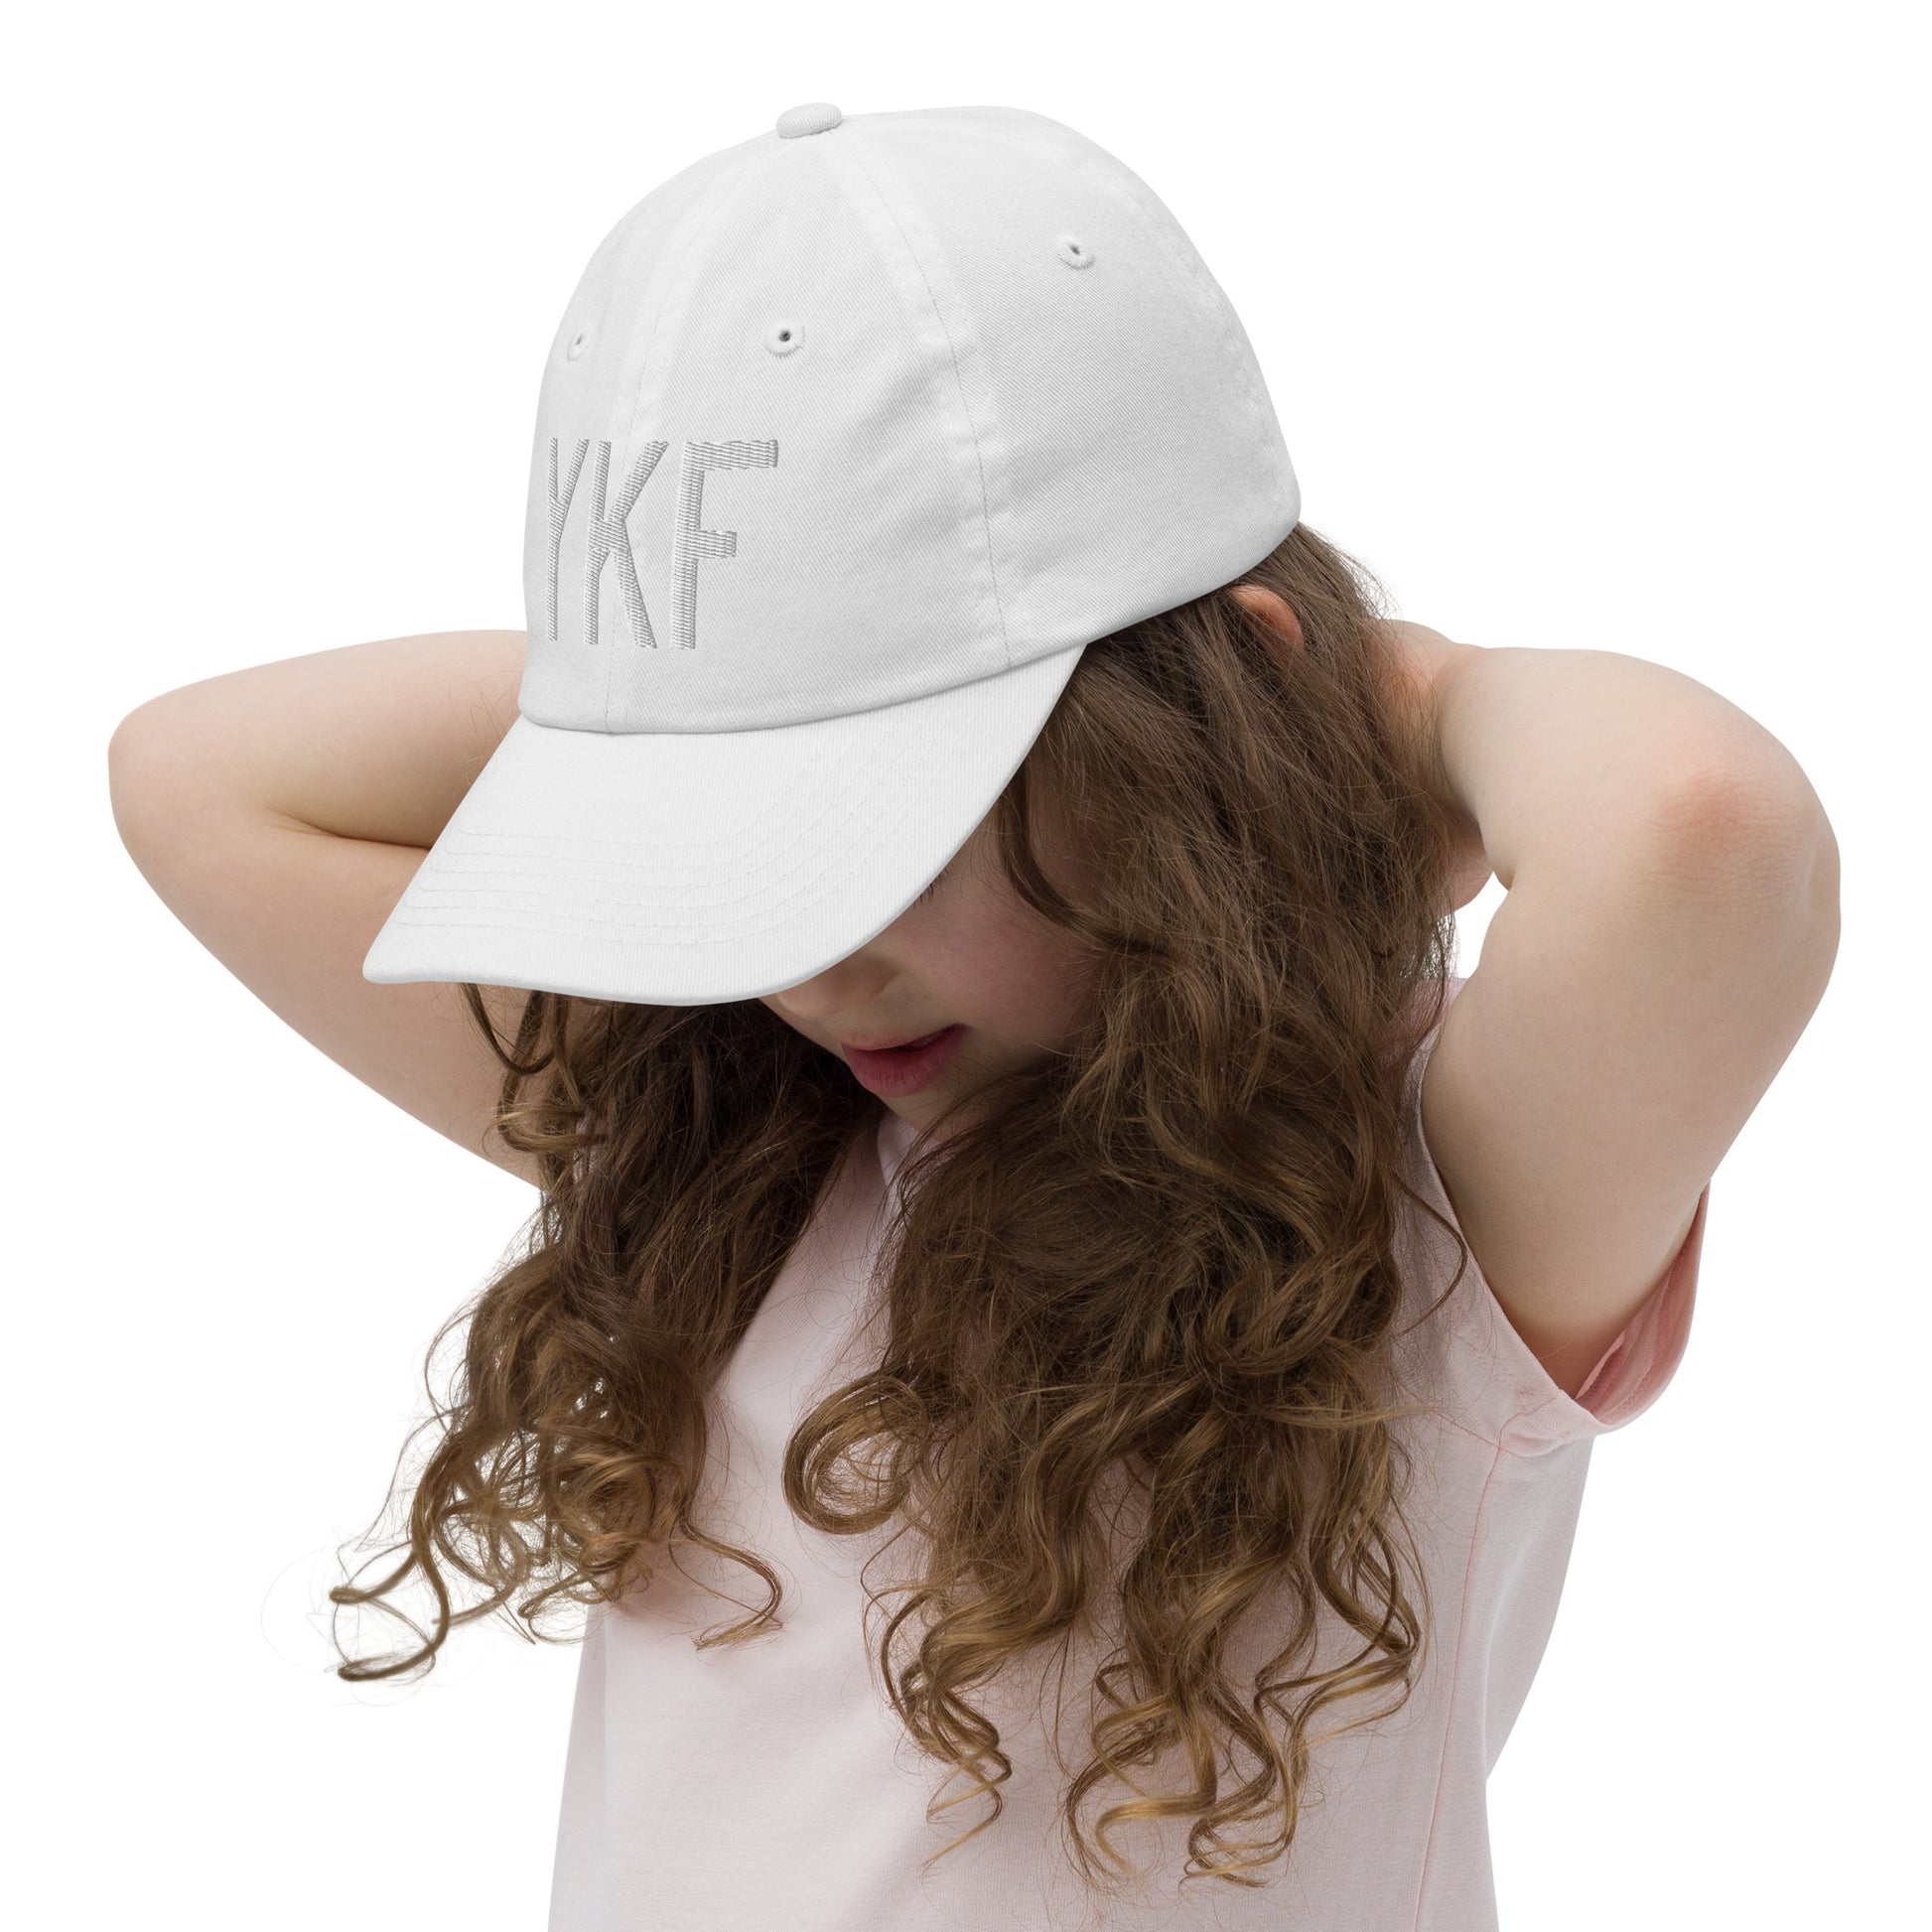 Airport Code Kid's Baseball Cap - White • YKF Waterloo • YHM Designs - Image 10